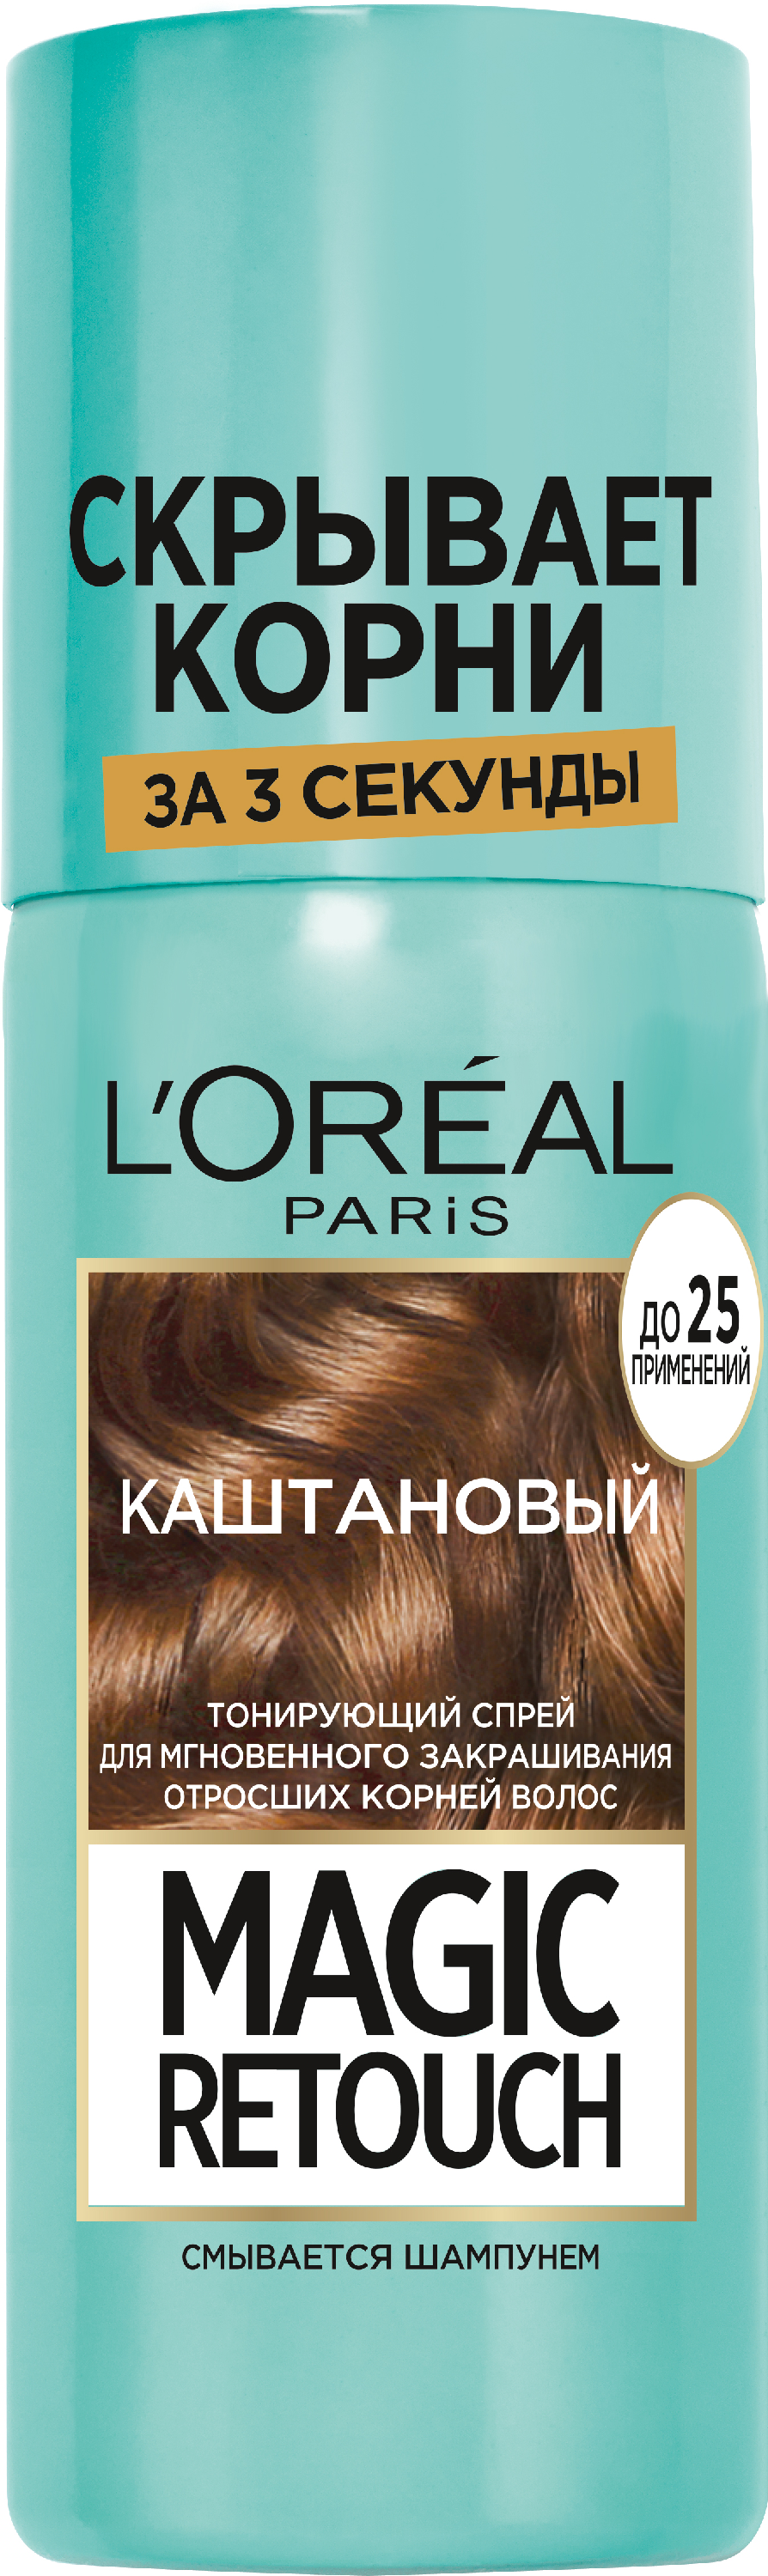 L'Oreal Тонирующий спрей для волос Paris Magic Retouch #3 75 мл  Каштановый 